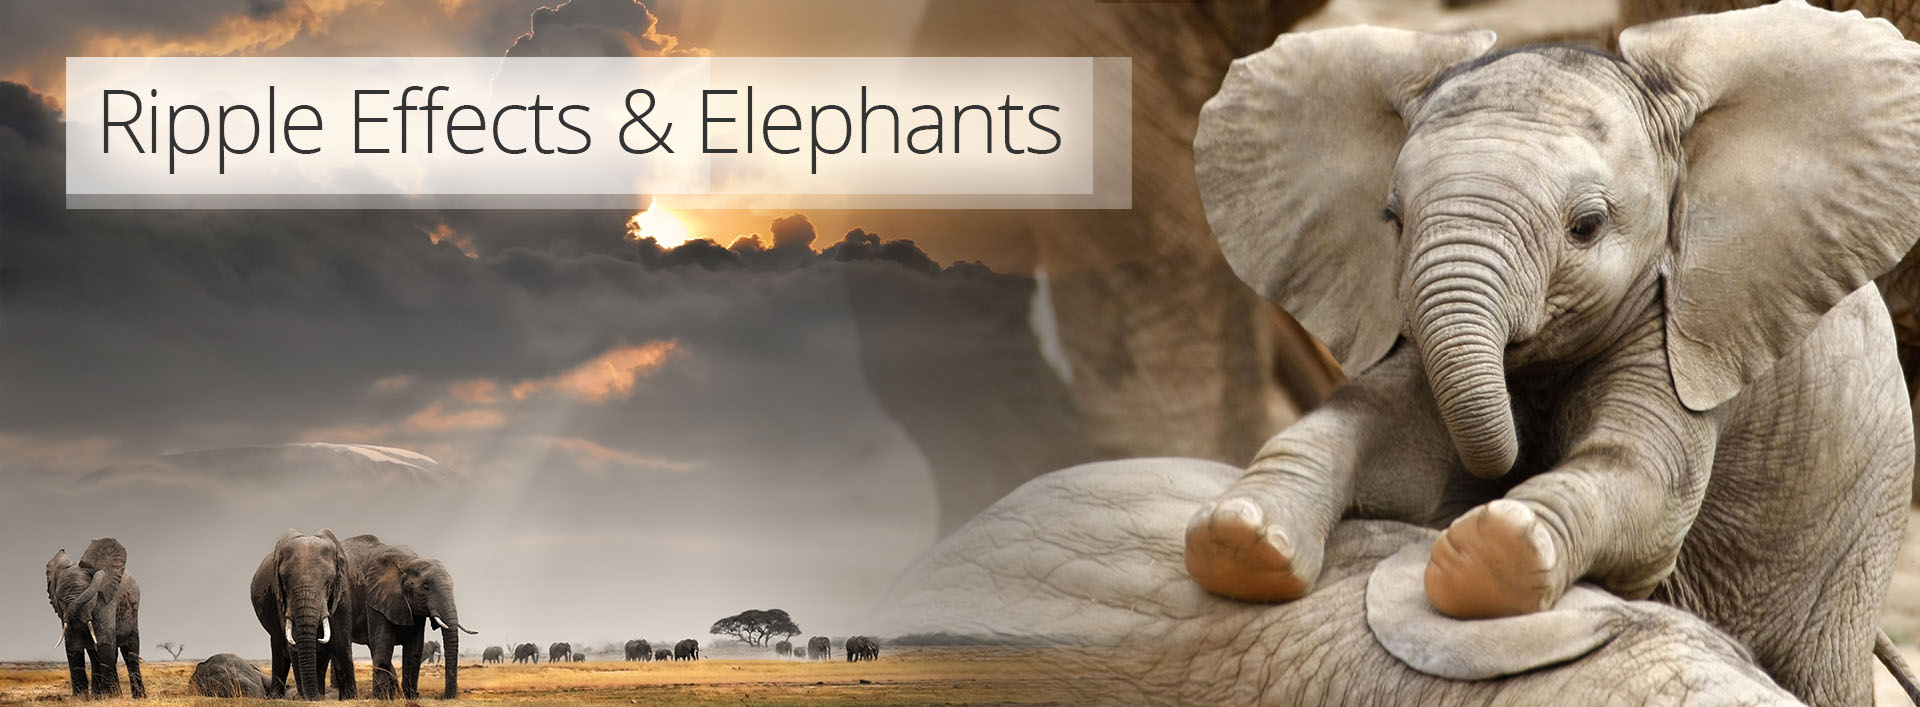 Ripple Effects & Elephants for Paul G Allen